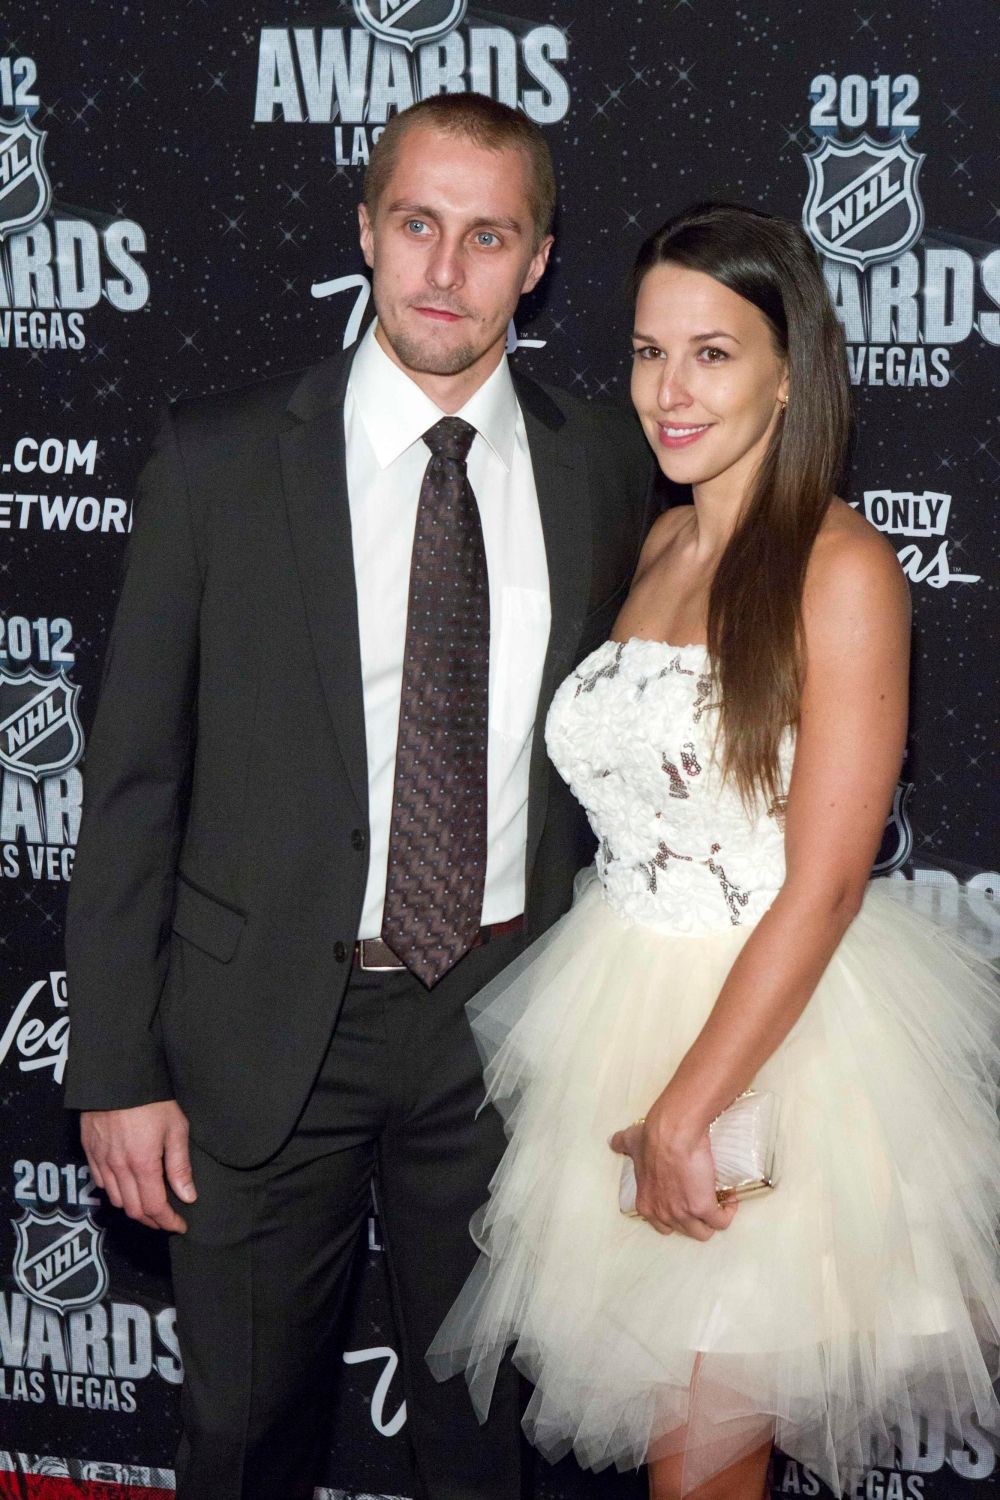 Hokejový brankář Jaroslav Halák pózuje s přítelkyní Petrou během předávání trofejí NHL v Las Vegas za sezónu 2011/12